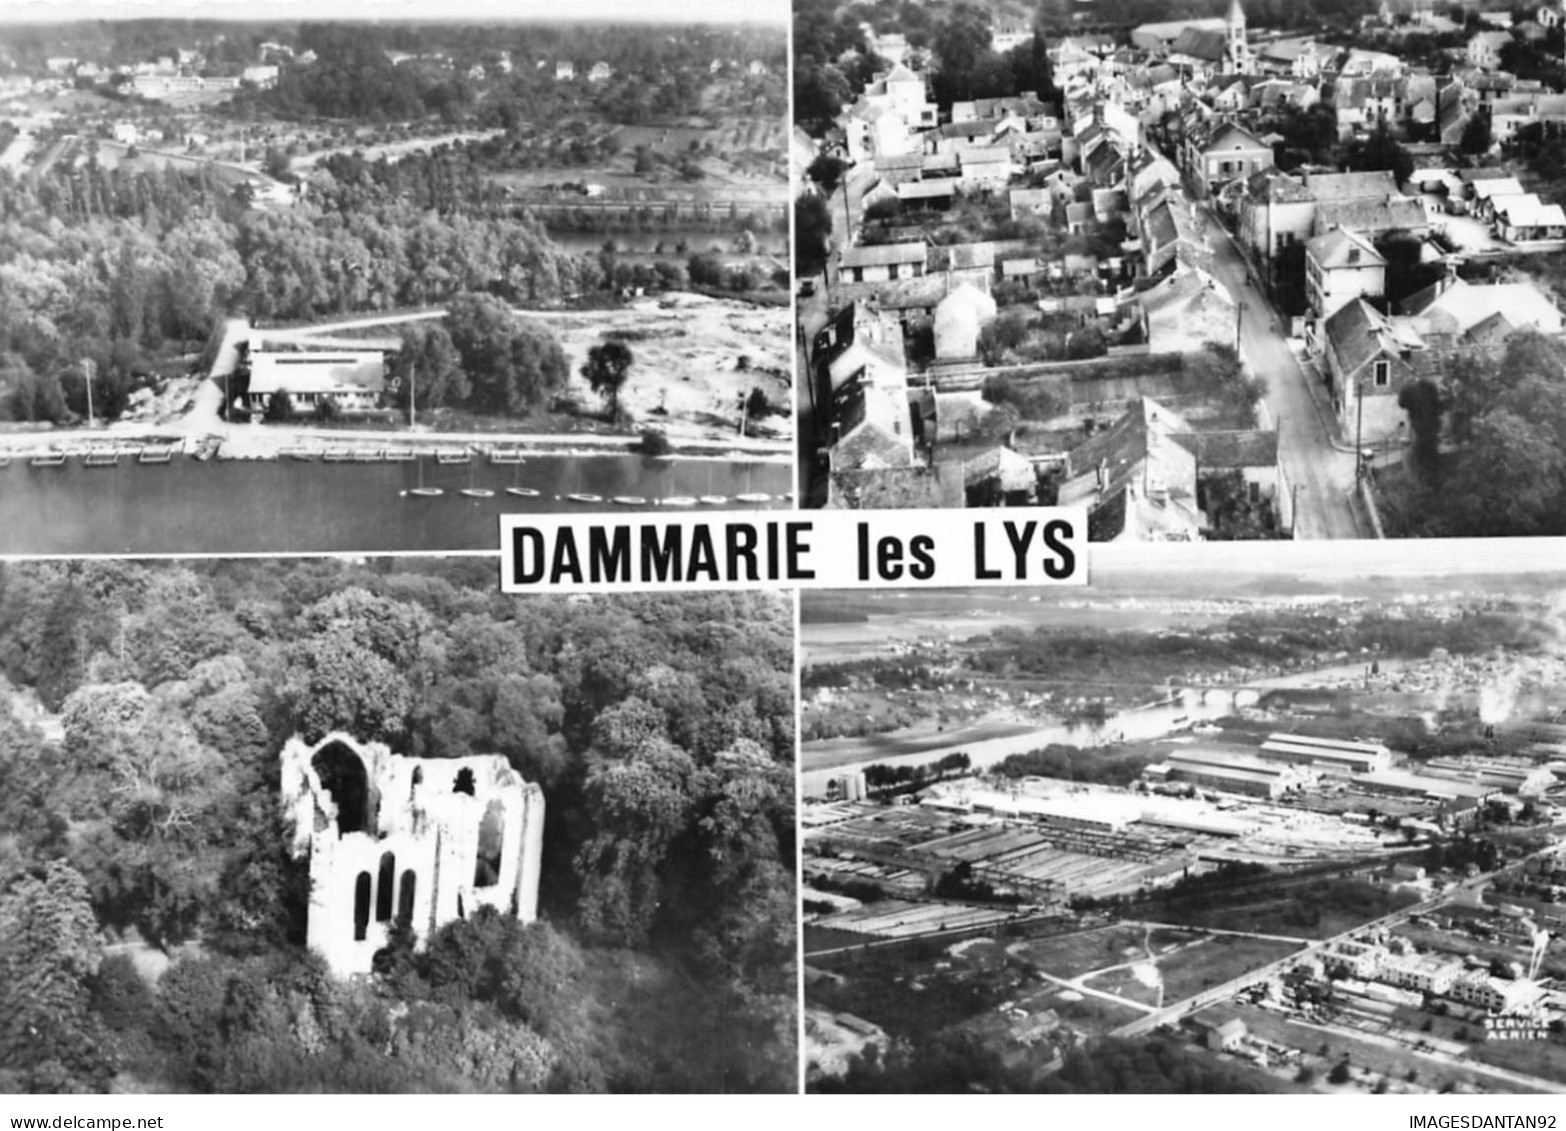 77 DAMMARIE LES LYS AK#DC690 MULTI-VUES AERIENNES GENERALES L ABBAYE DU LYS LES BORDS DE LA SEINE - Dammarie Les Lys